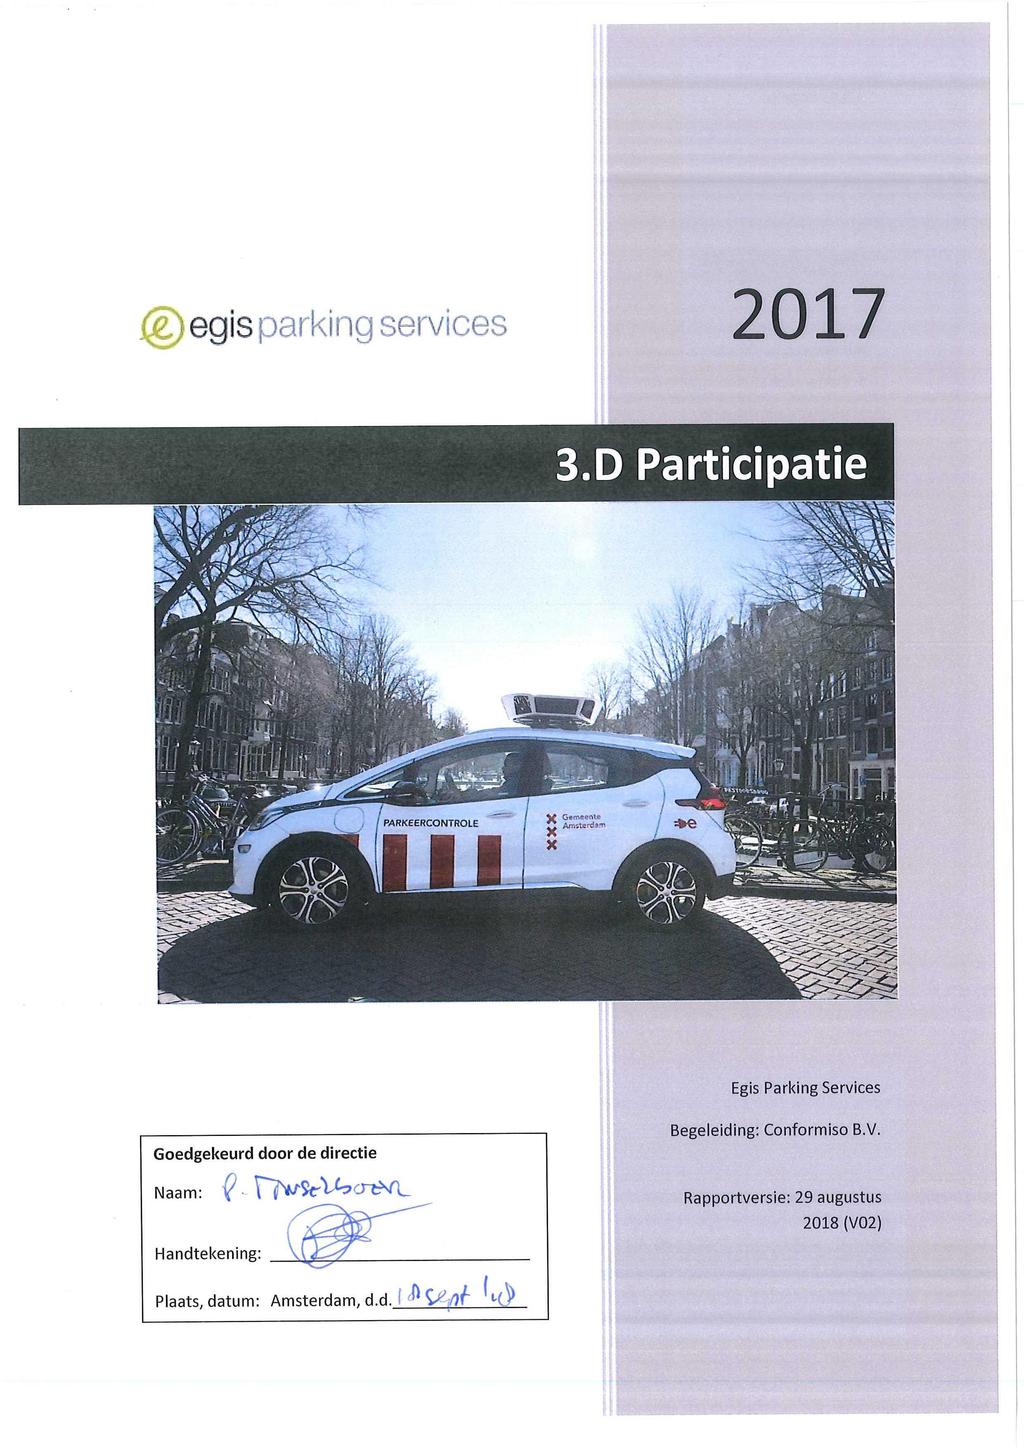 @ egis parking services 2017 Egis Parking Services Goedgekeurd door de directie Naam: ^ \^^thcn^